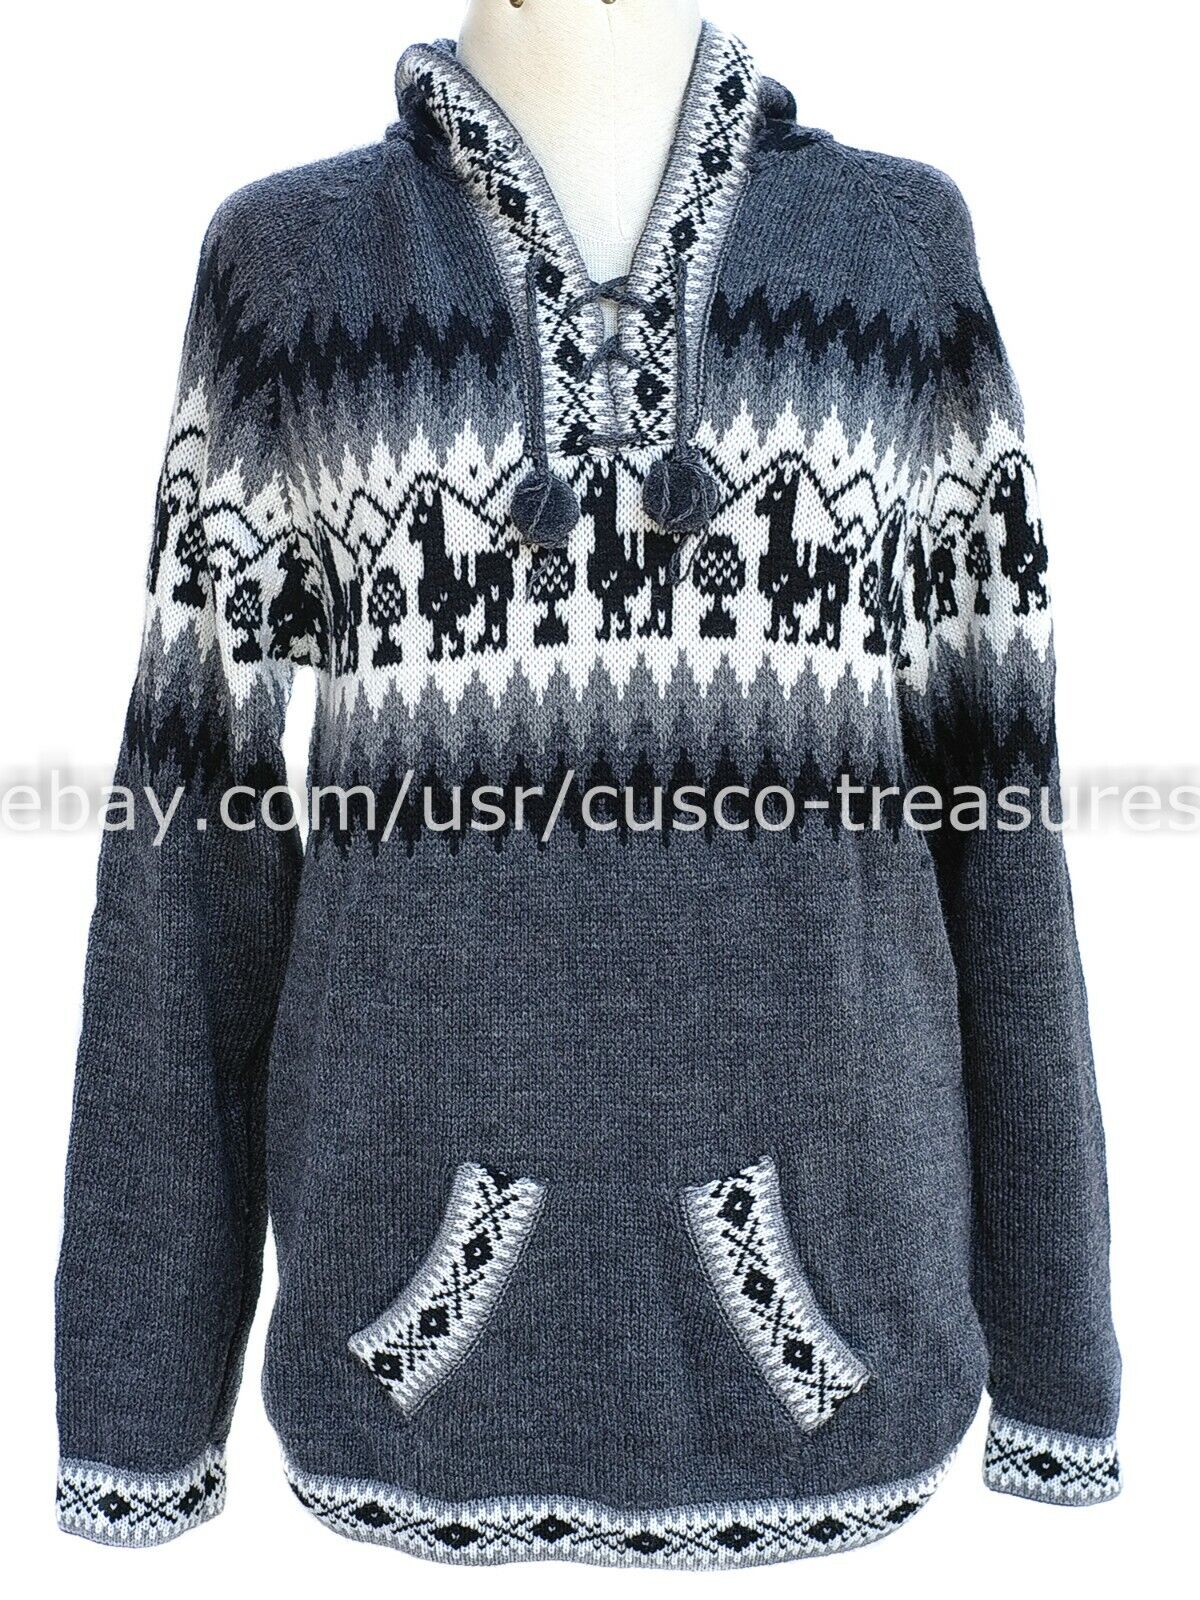 Blue wool alpaca sweater Cable knit jumper Alpaca sweater| SOGNO Women jumper Boho sweater Women knitwear Sustainable knitwear